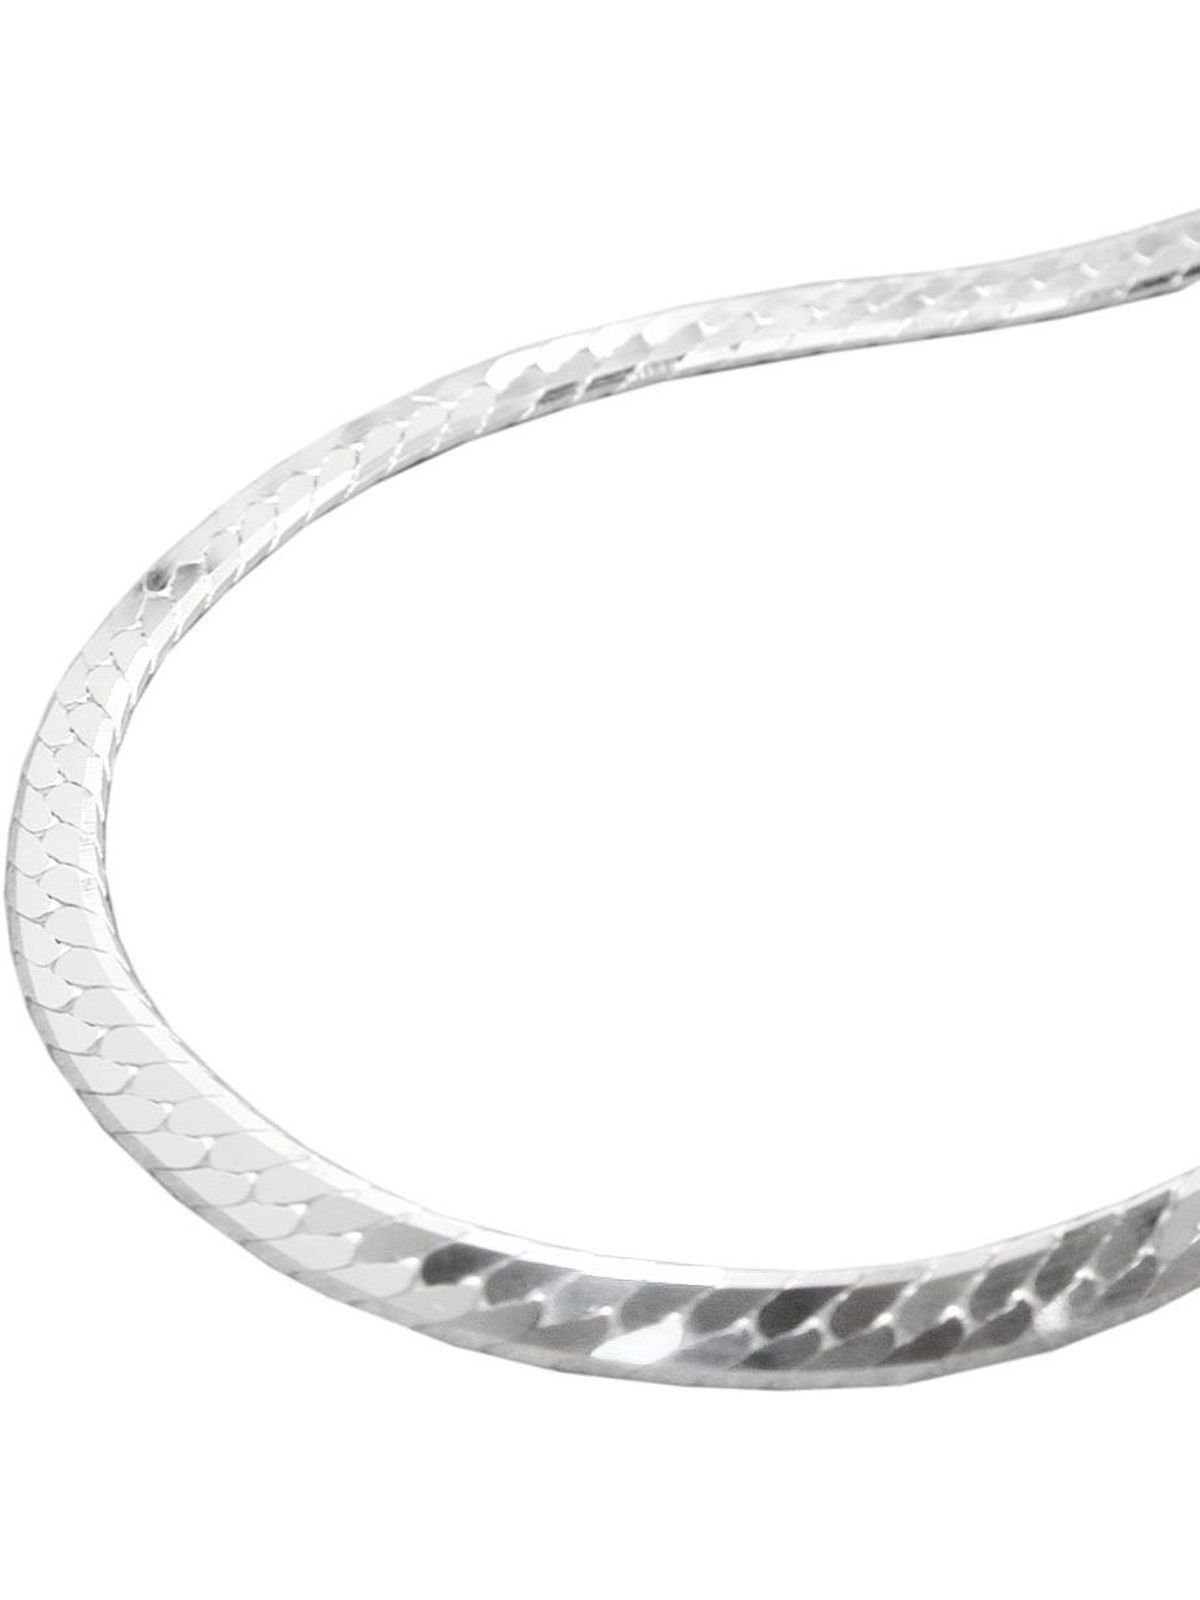 Gallay Silberarmband 3mm Panzerkette flach gedrückt glänzend diamantiert Silber 925 19cm (Silberarmband, 1-tlg)